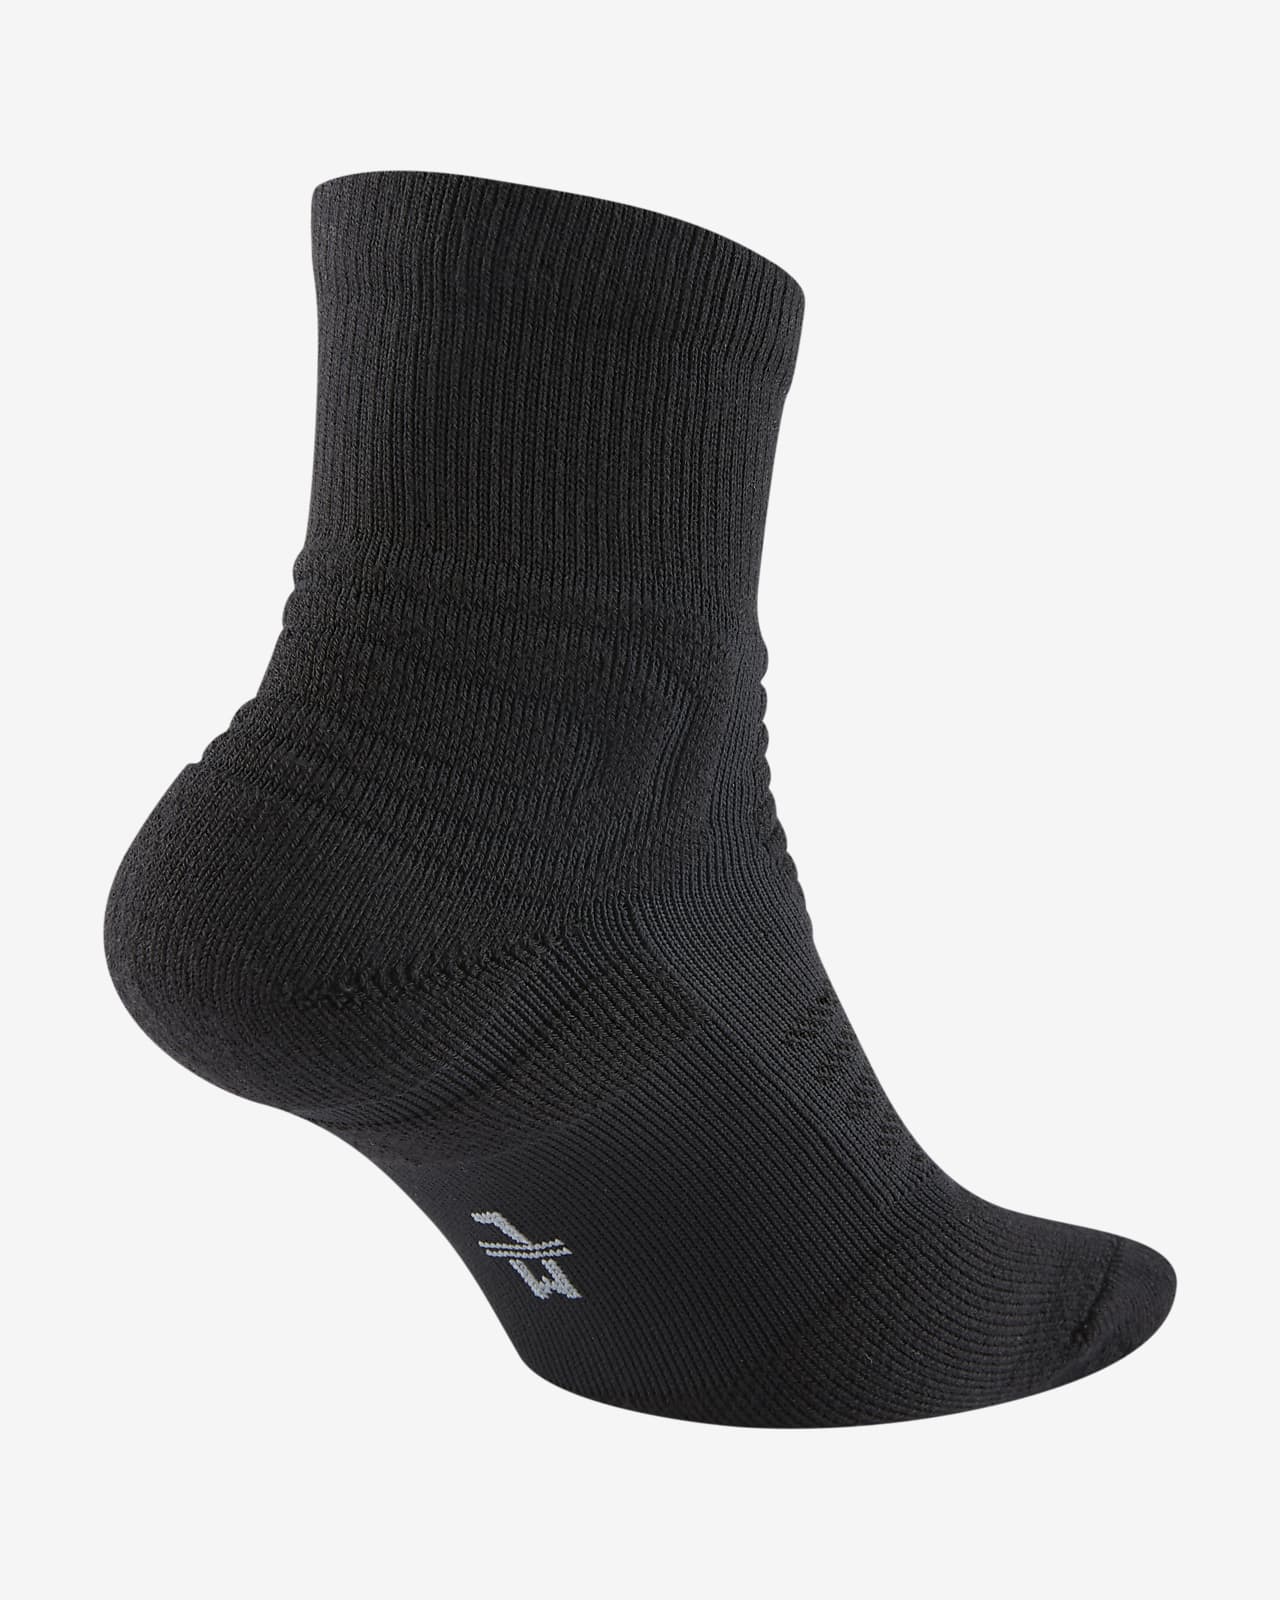 Ultimate Flight 2.0 Quarter Basketball Socks. Nike DK